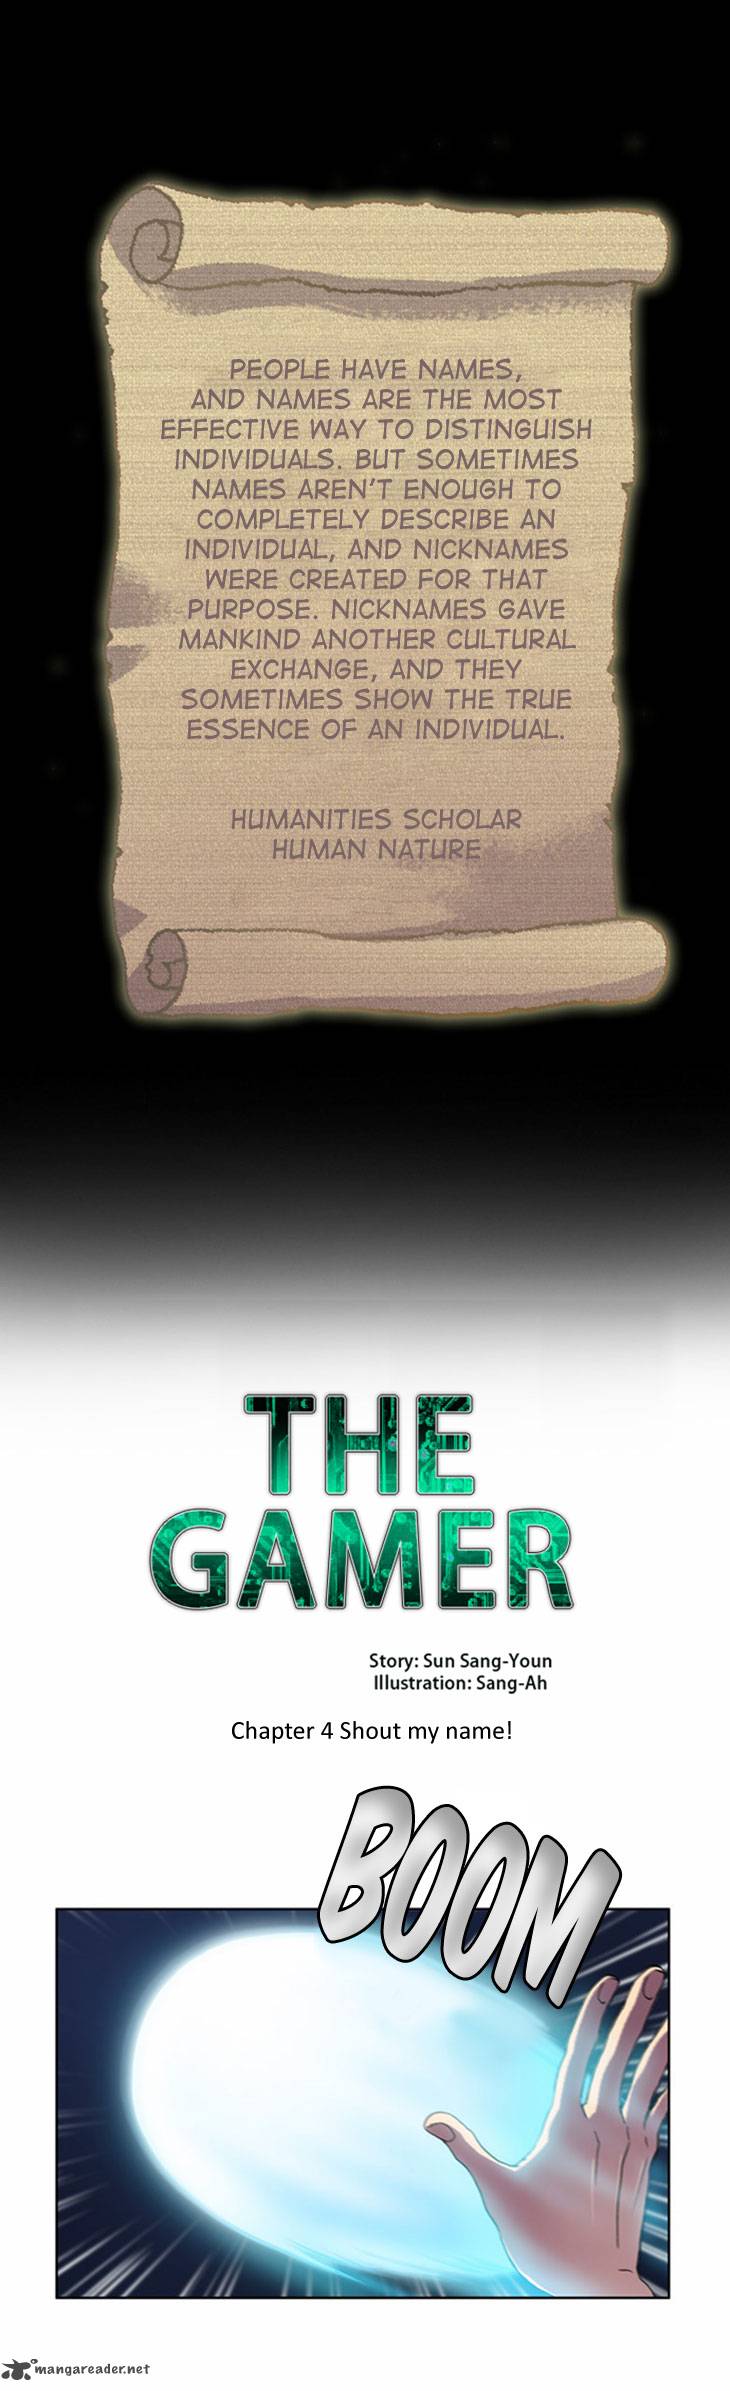 the_gamer_12_1